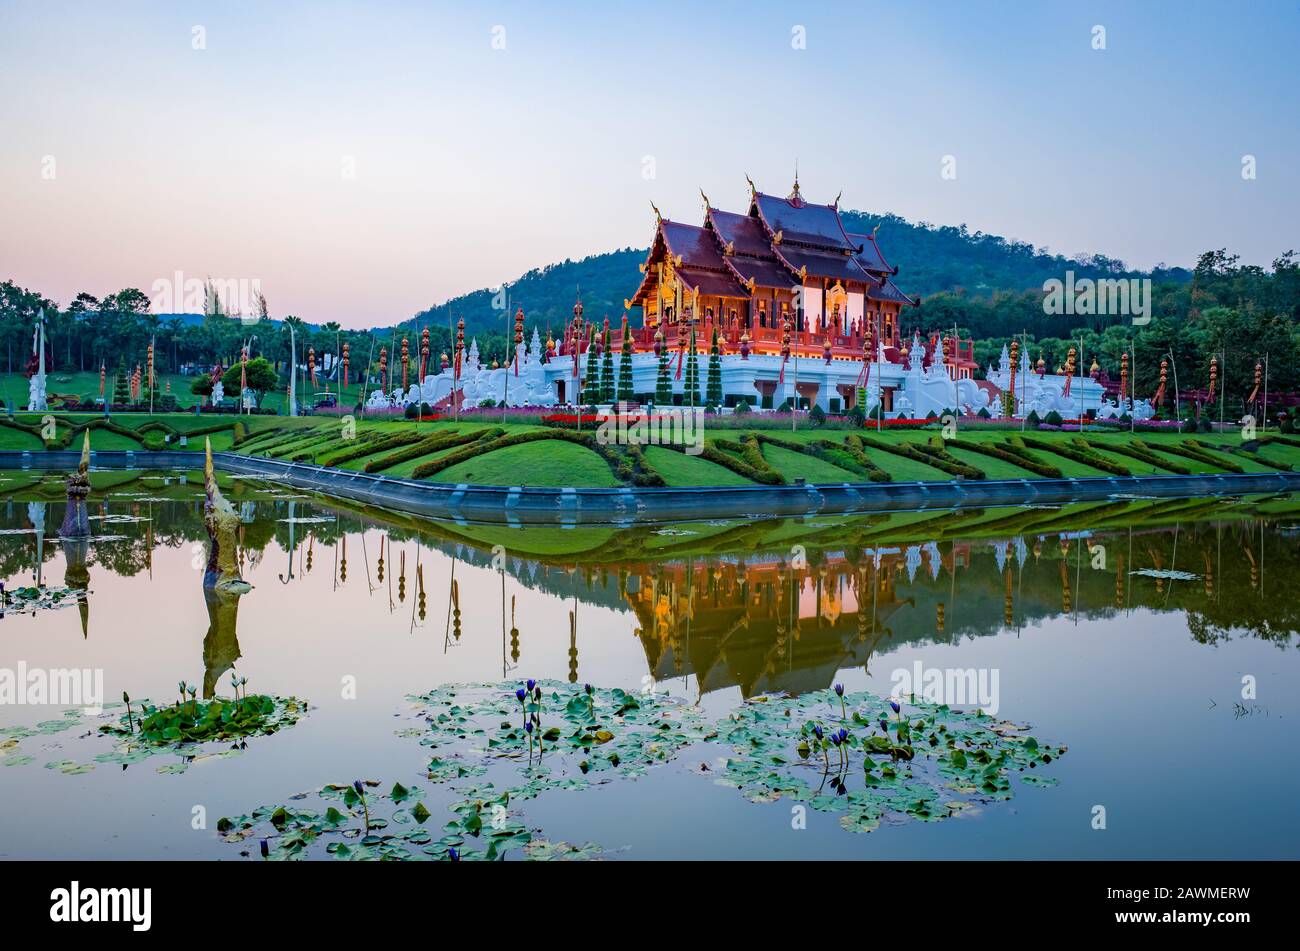 Pavillon royal du parc royal Rajaruek dans la province de Chiang Mai, Thaïlande Banque D'Images